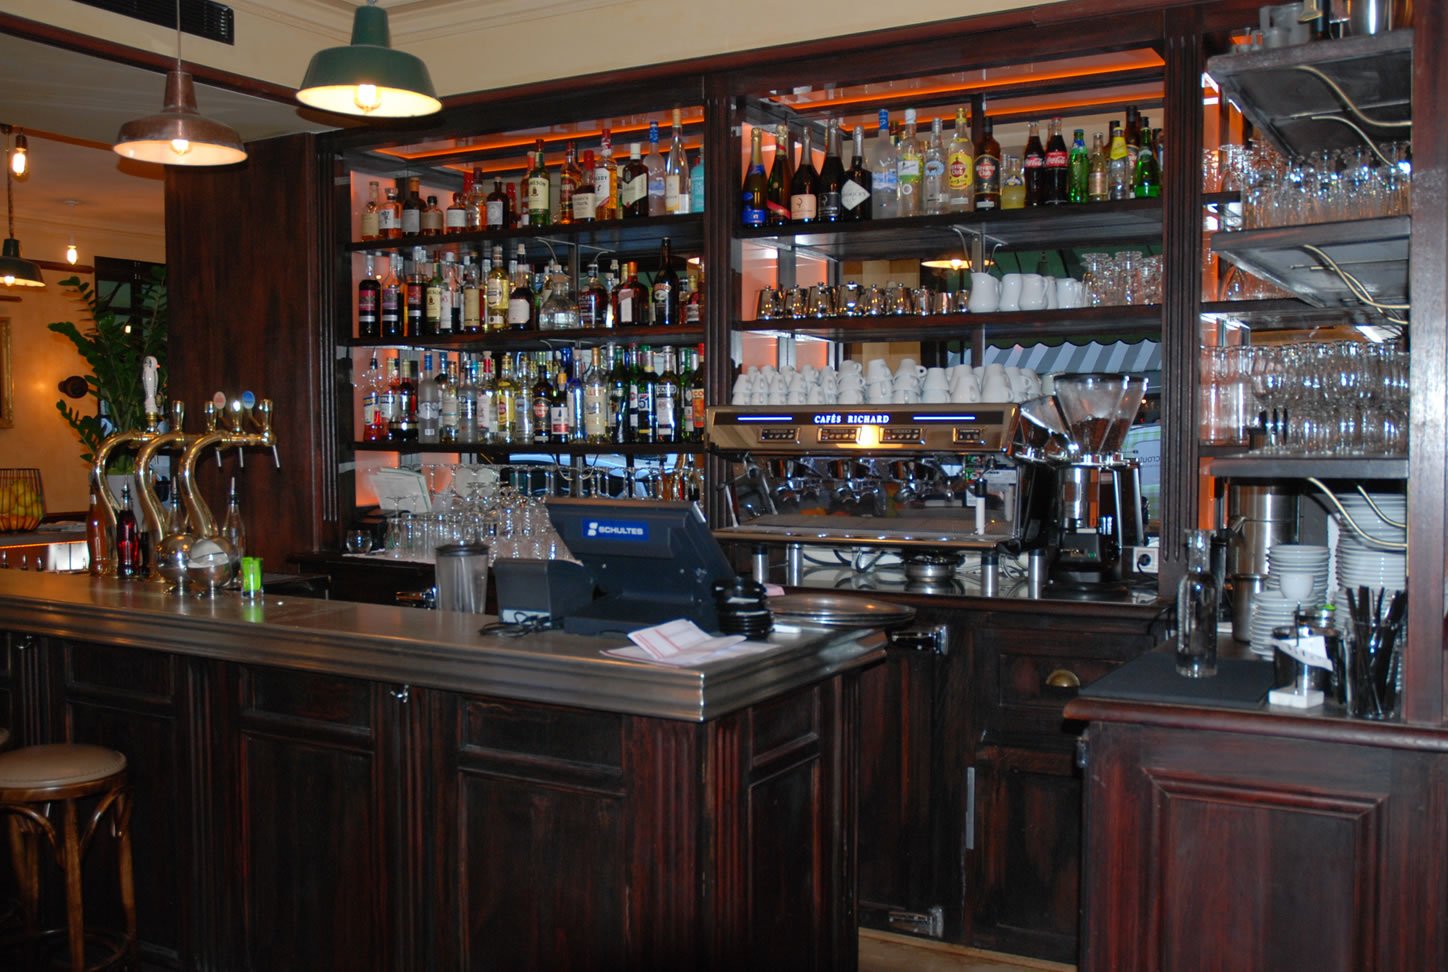  Arrière bar et emplacement machine à café